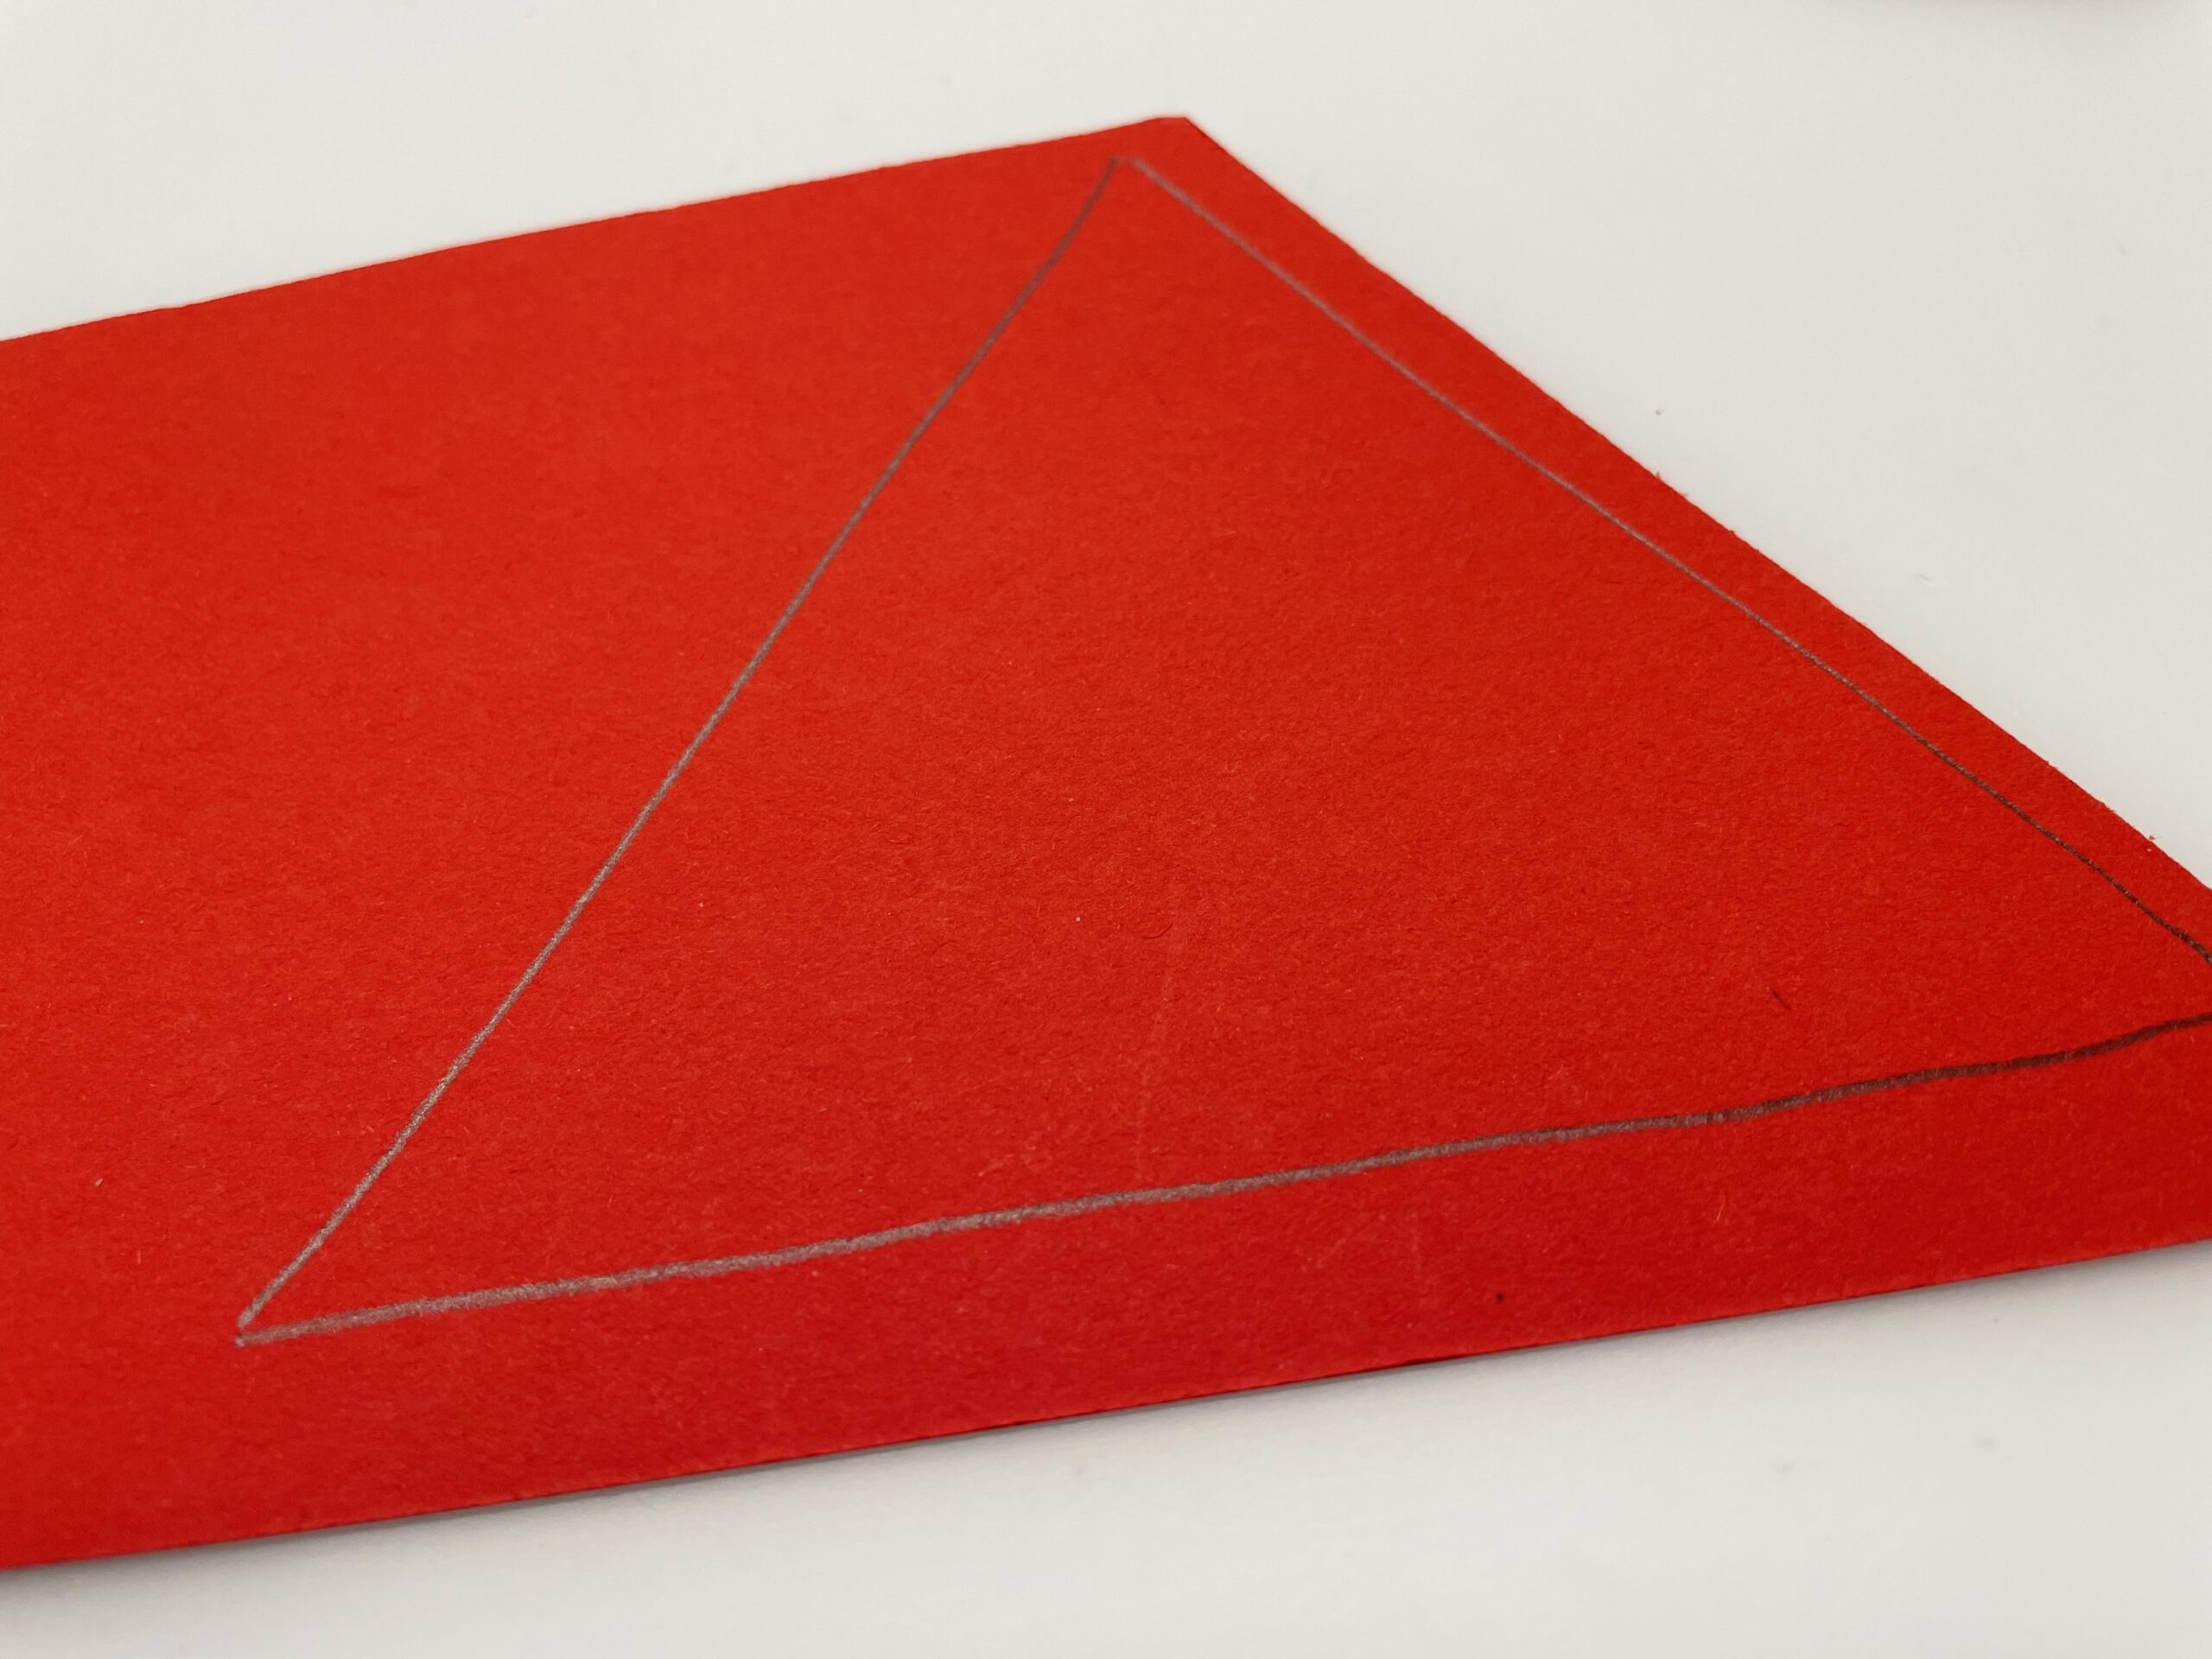 Bild zum Schritt 6 für das Bastel- und DIY-Abenteuer für Kinder: 'Dafür malt ihr ein Dreieck auf rotes, braunes oder graues...'